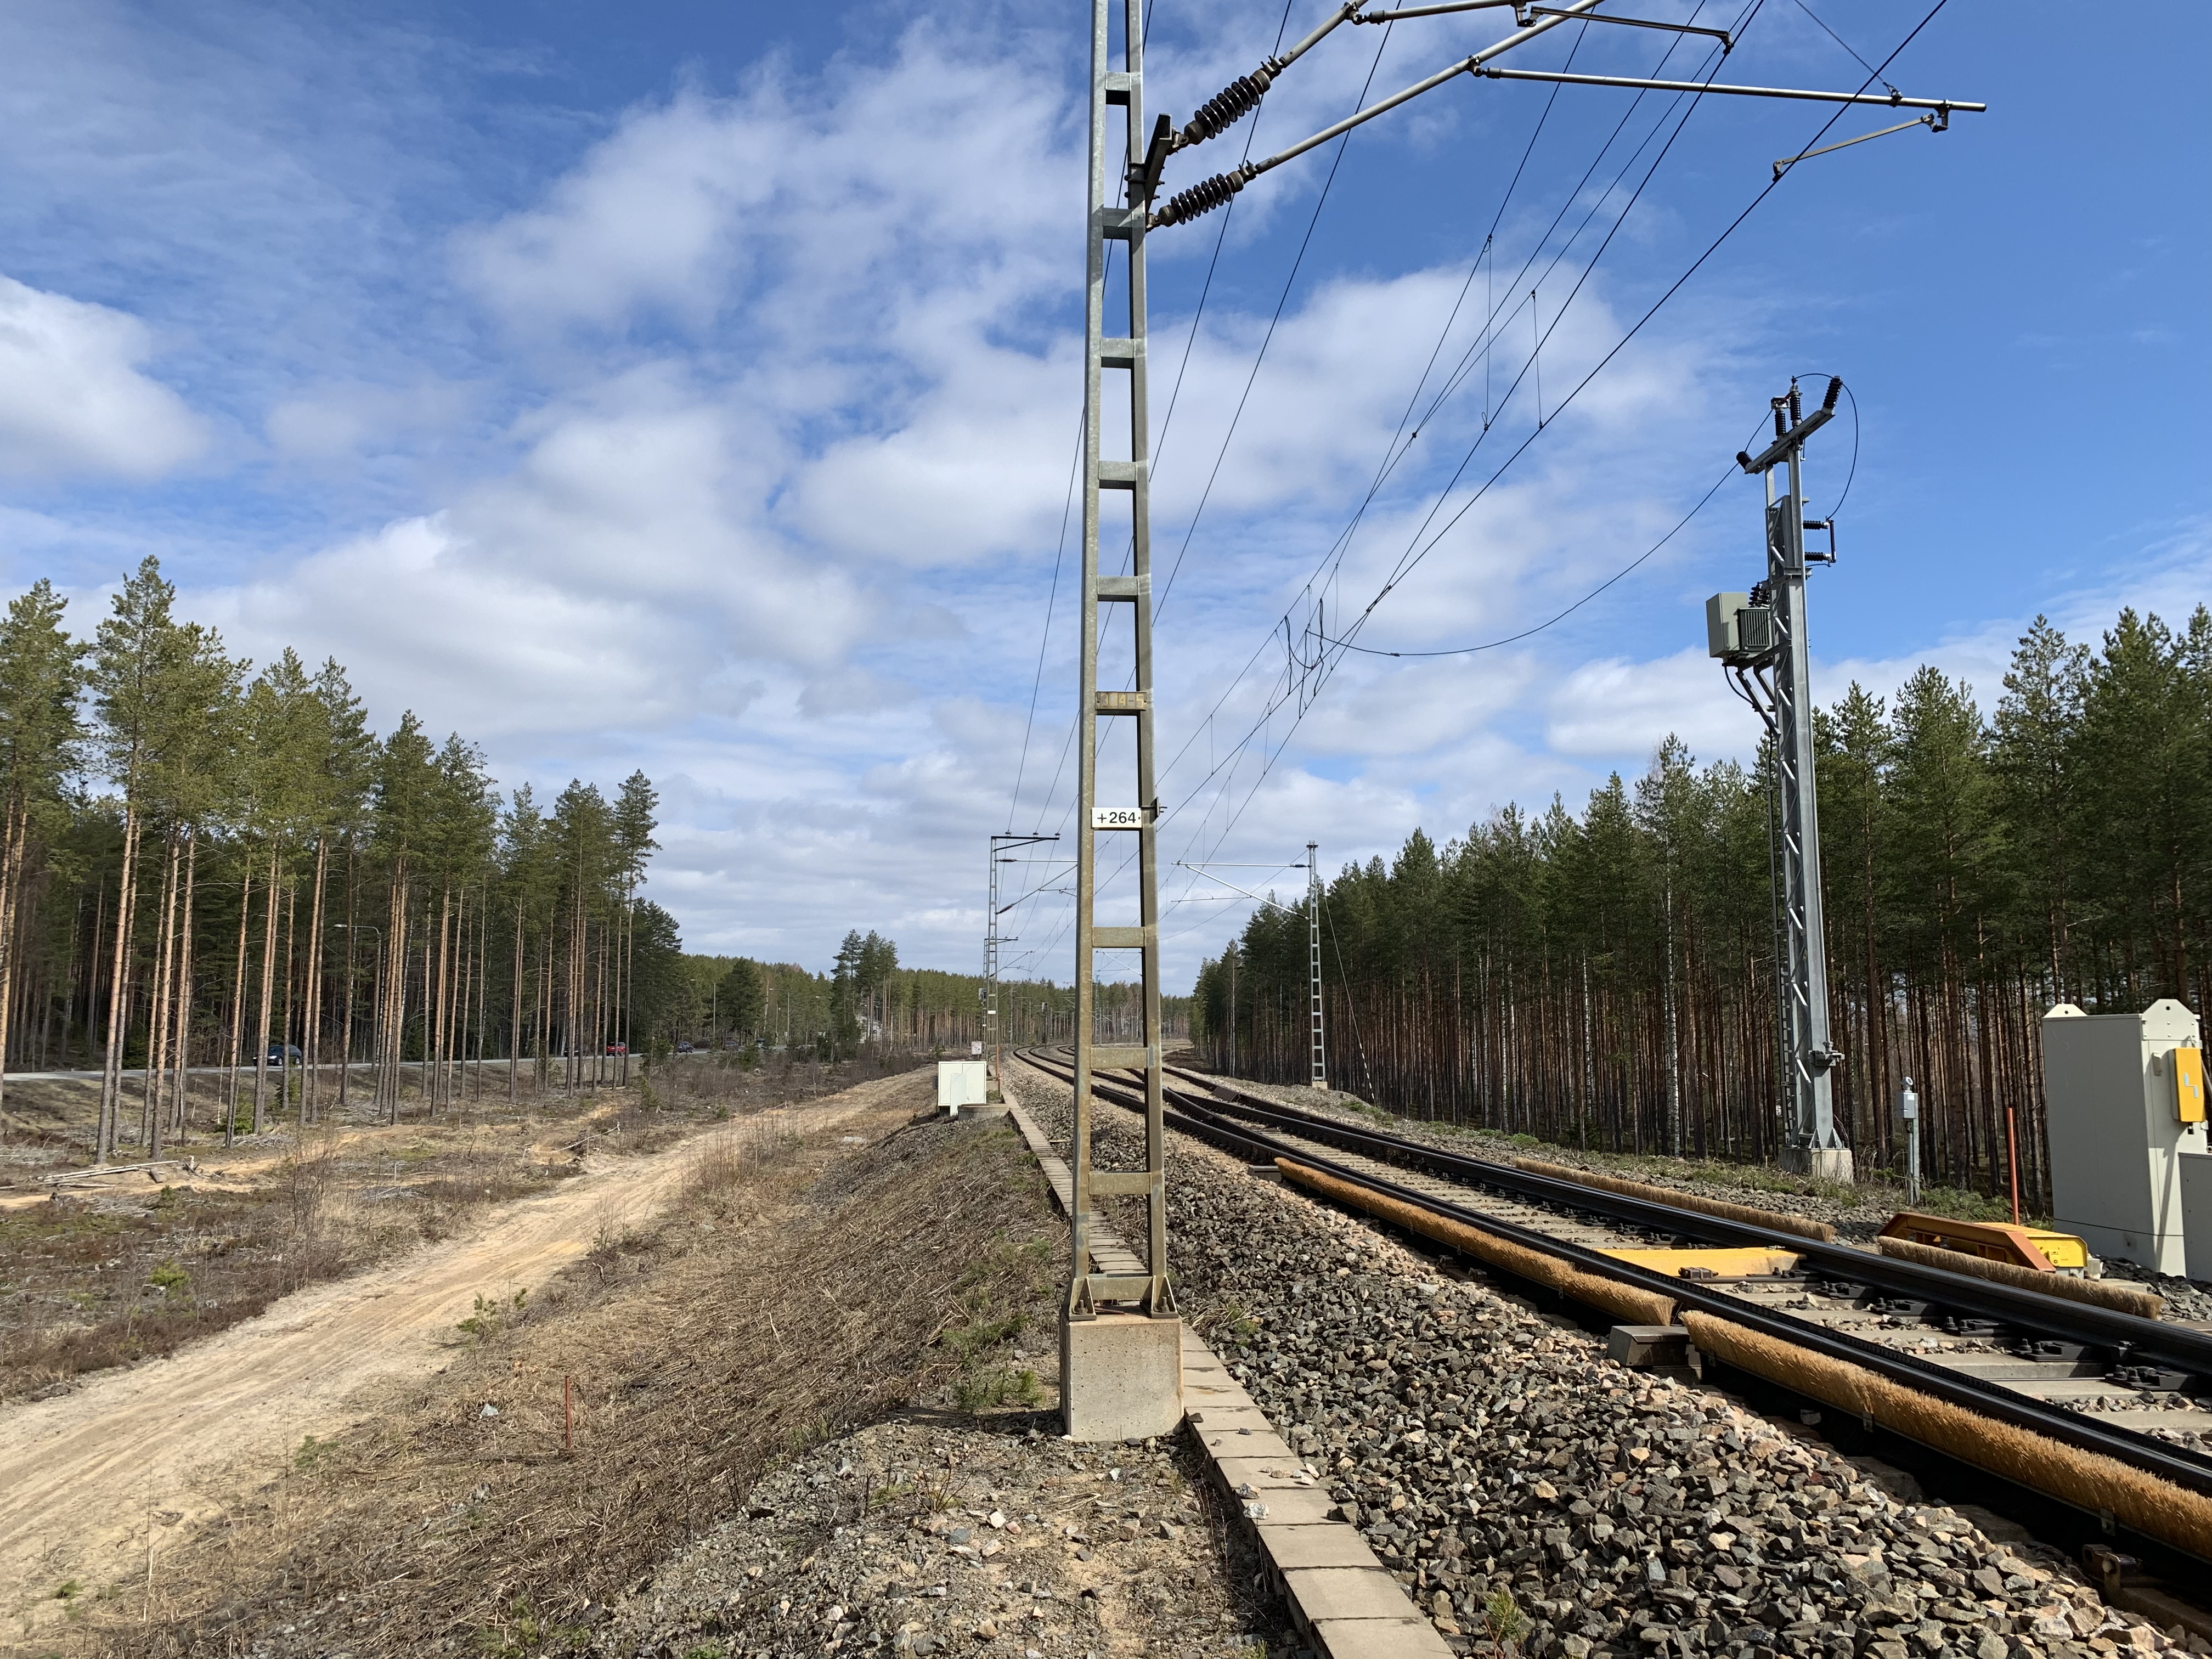 Kesäinen kuva Muuramen liikennepaikasta. Kuvassa näkyy rautatiekisko ja teknisiä laitteita.